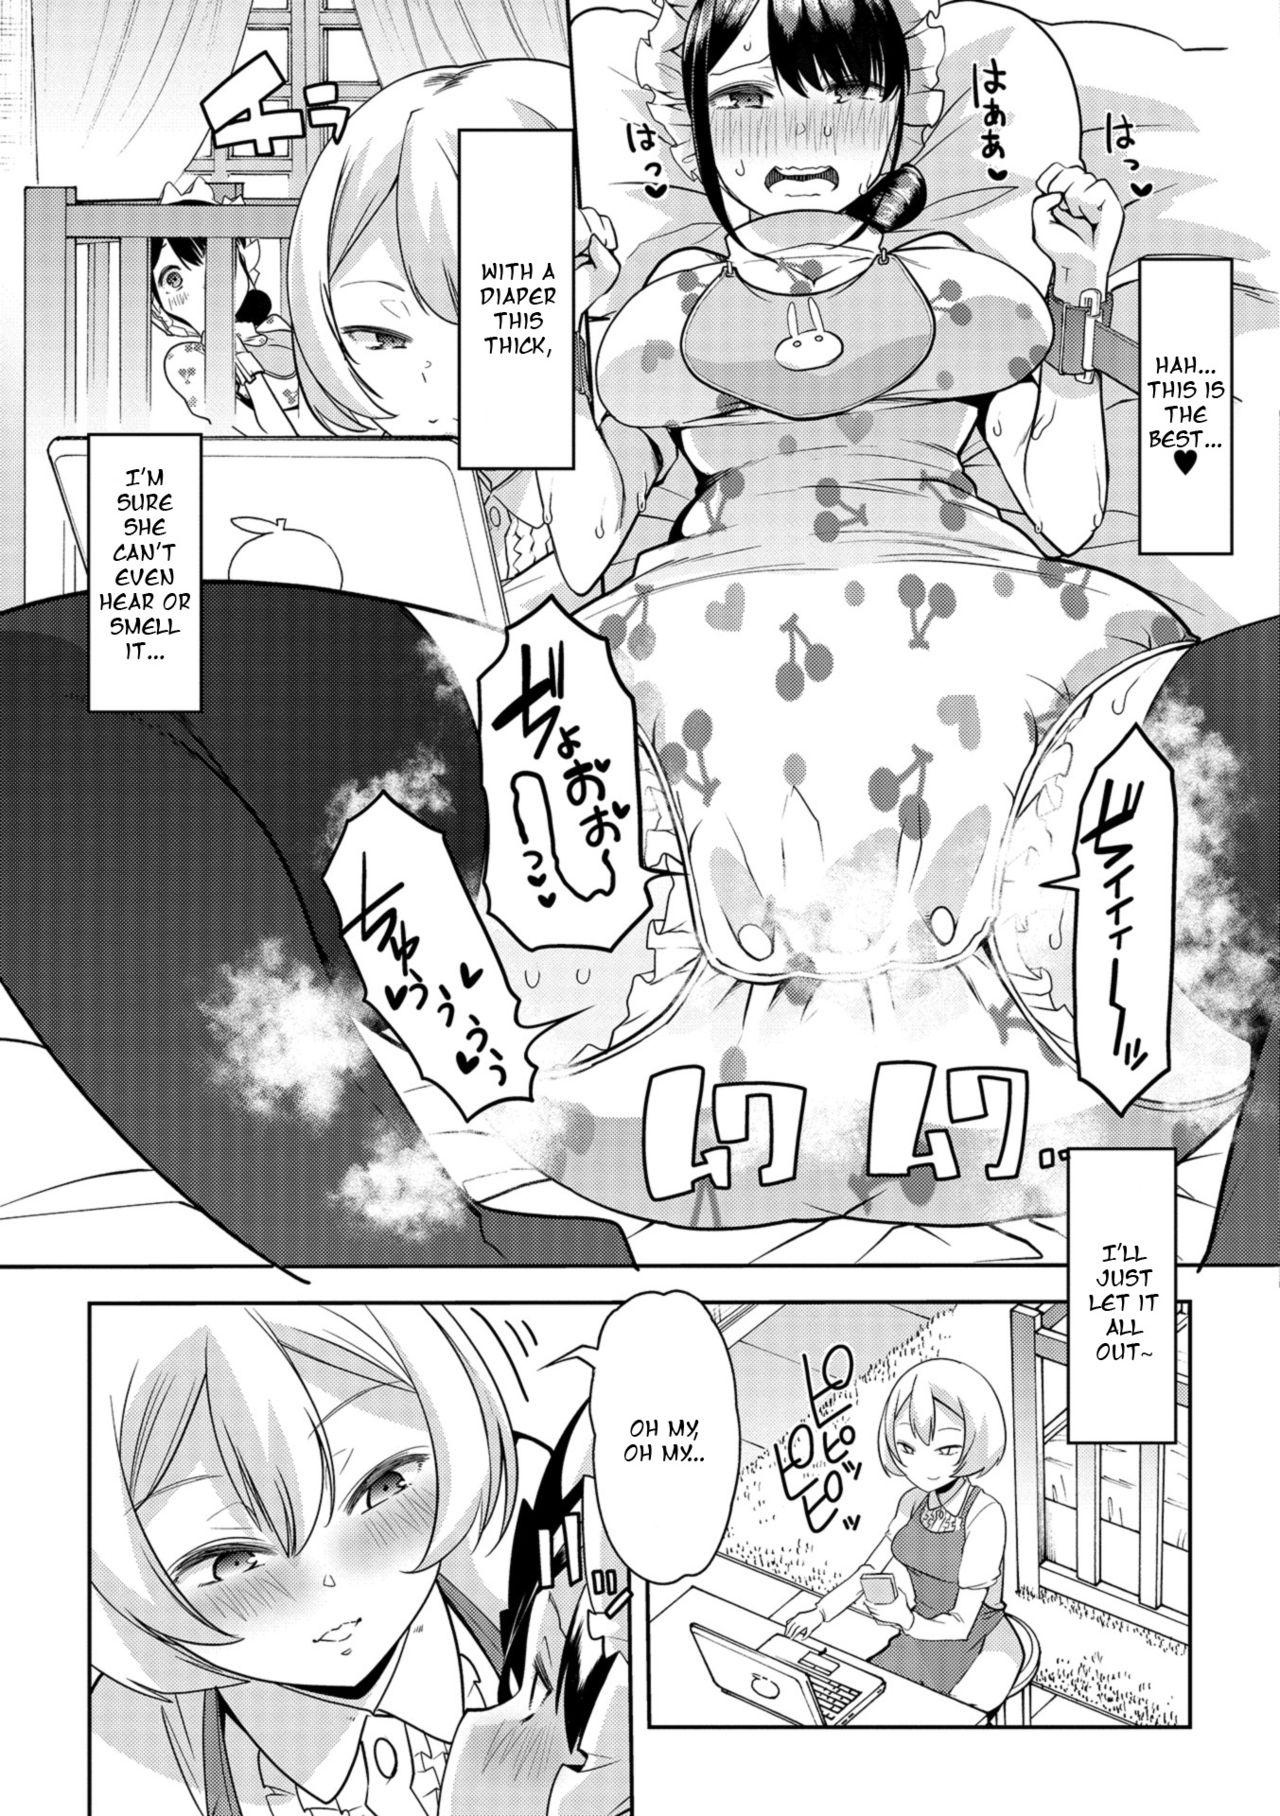 This Himitsu no Gyaku Toilet Training 3 Leite - Page 7